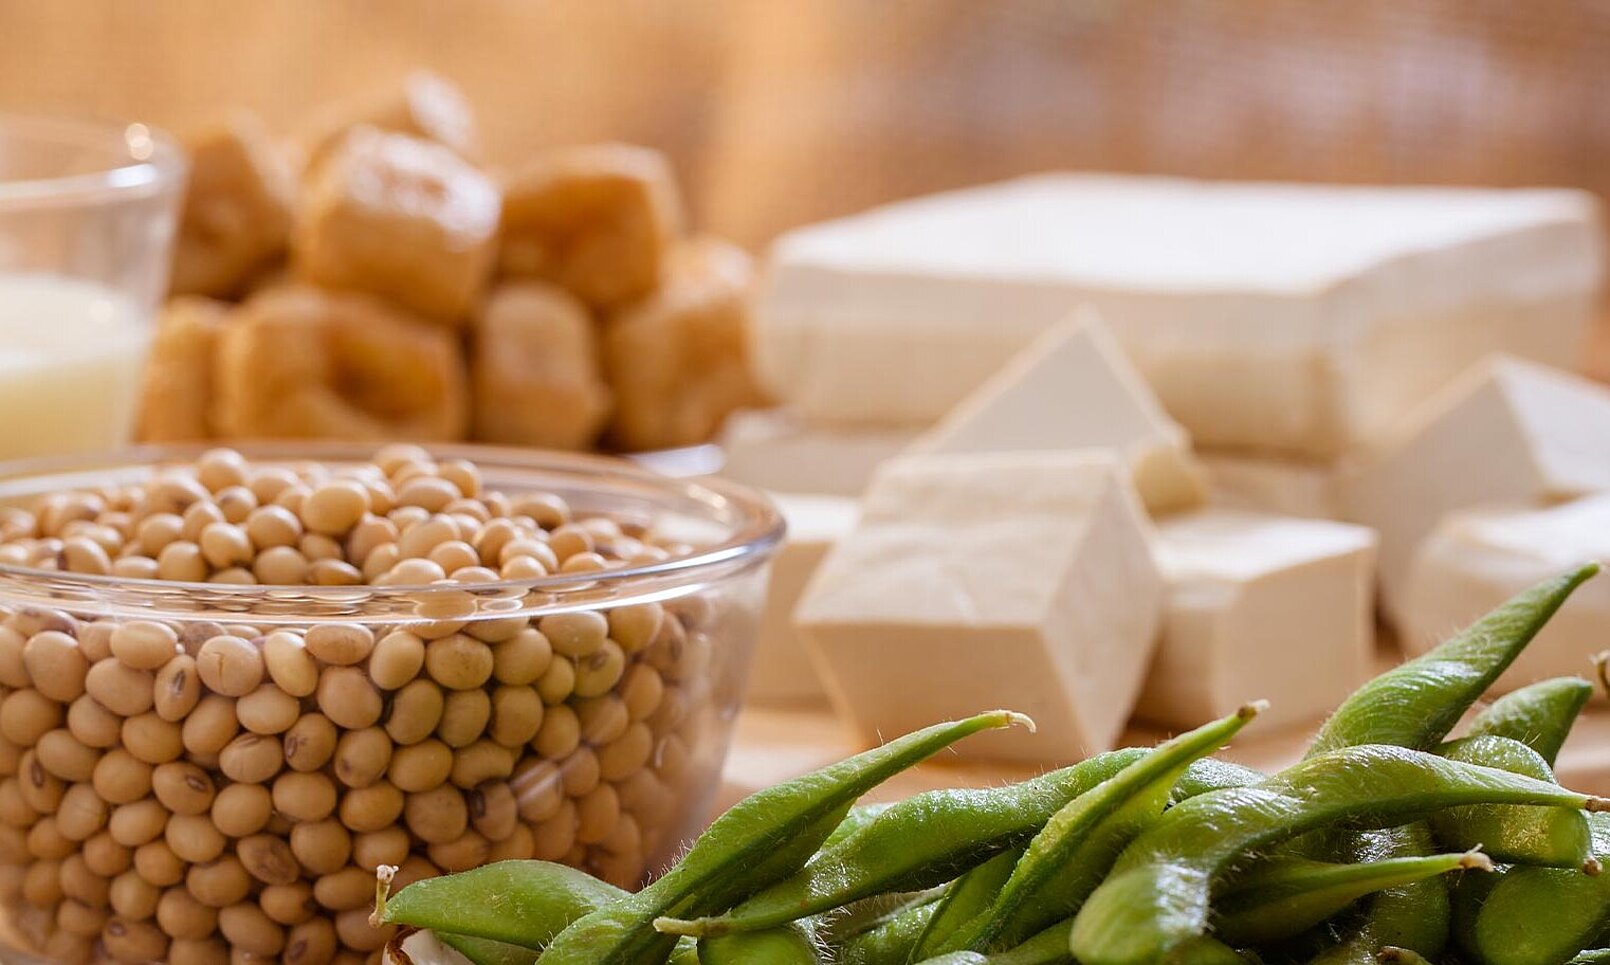 Tecnología alimentaria de KRONEN: preparar productos veganos, por ejemplo, cortar o deshilachar placas de proteína de soja y guisantes